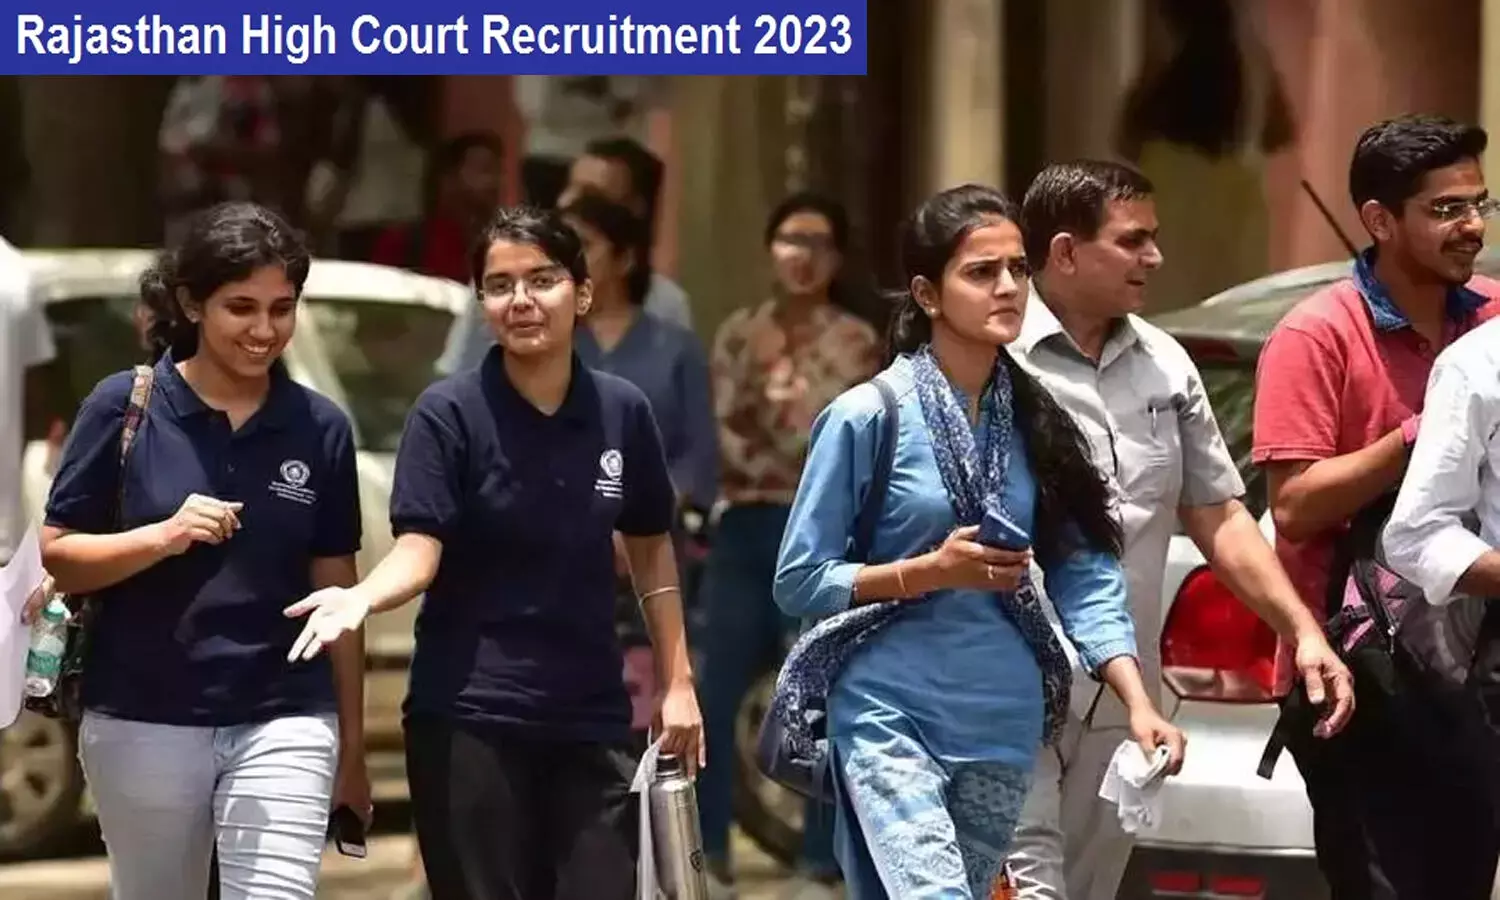 Rajasthan High Court Recruitment 2023: राजस्थान हाई कोर्ट में निकली वैकेंसी, क्वालिफिकेशन व एज लिमिट फटाफट जान लें